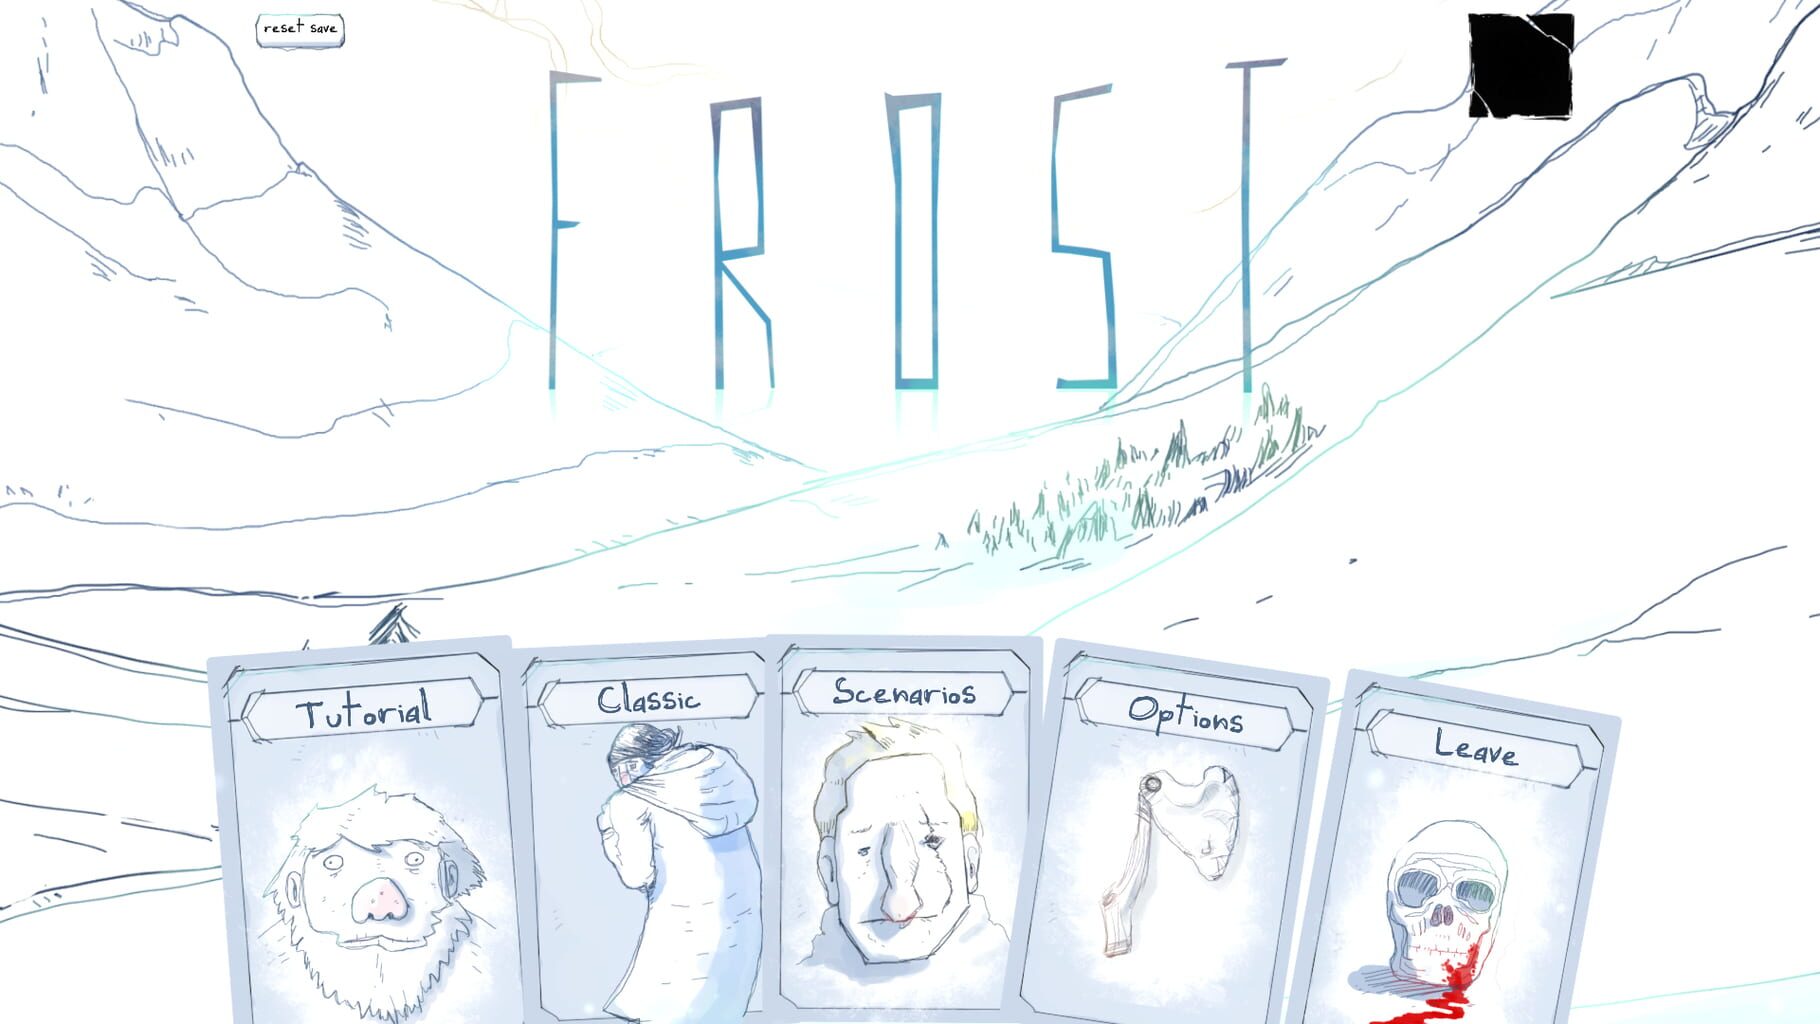 Frost screenshot